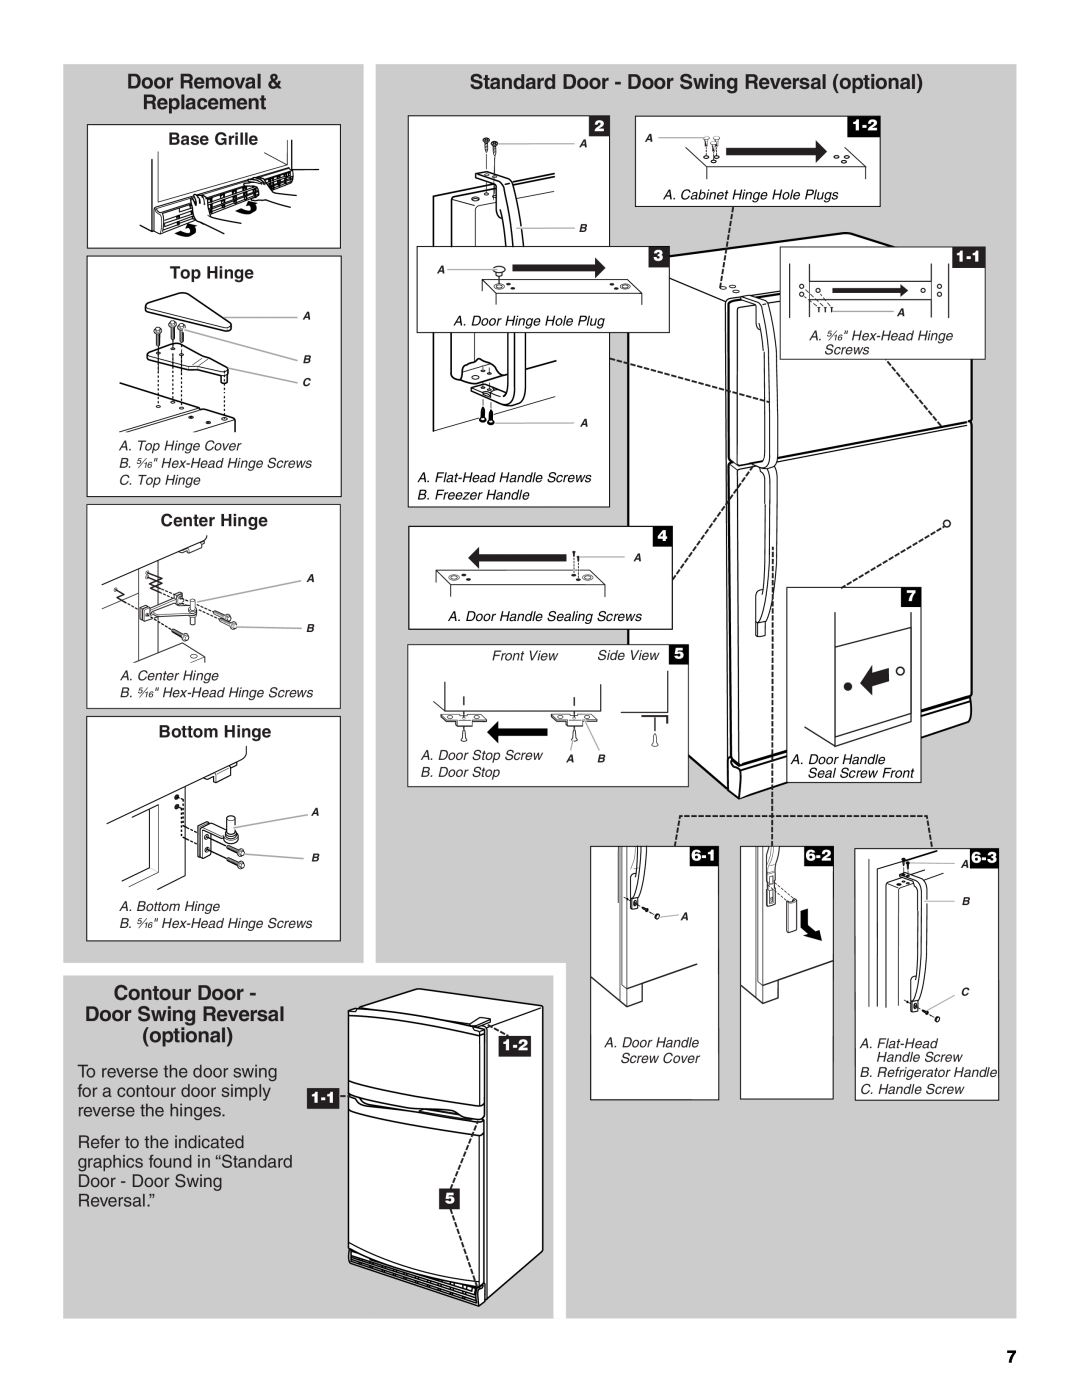 Whirlpool W10249205A Door Removal, Standard Door - Door Swing Reversal optional, Replacement, Contour Door, Top Hinge 